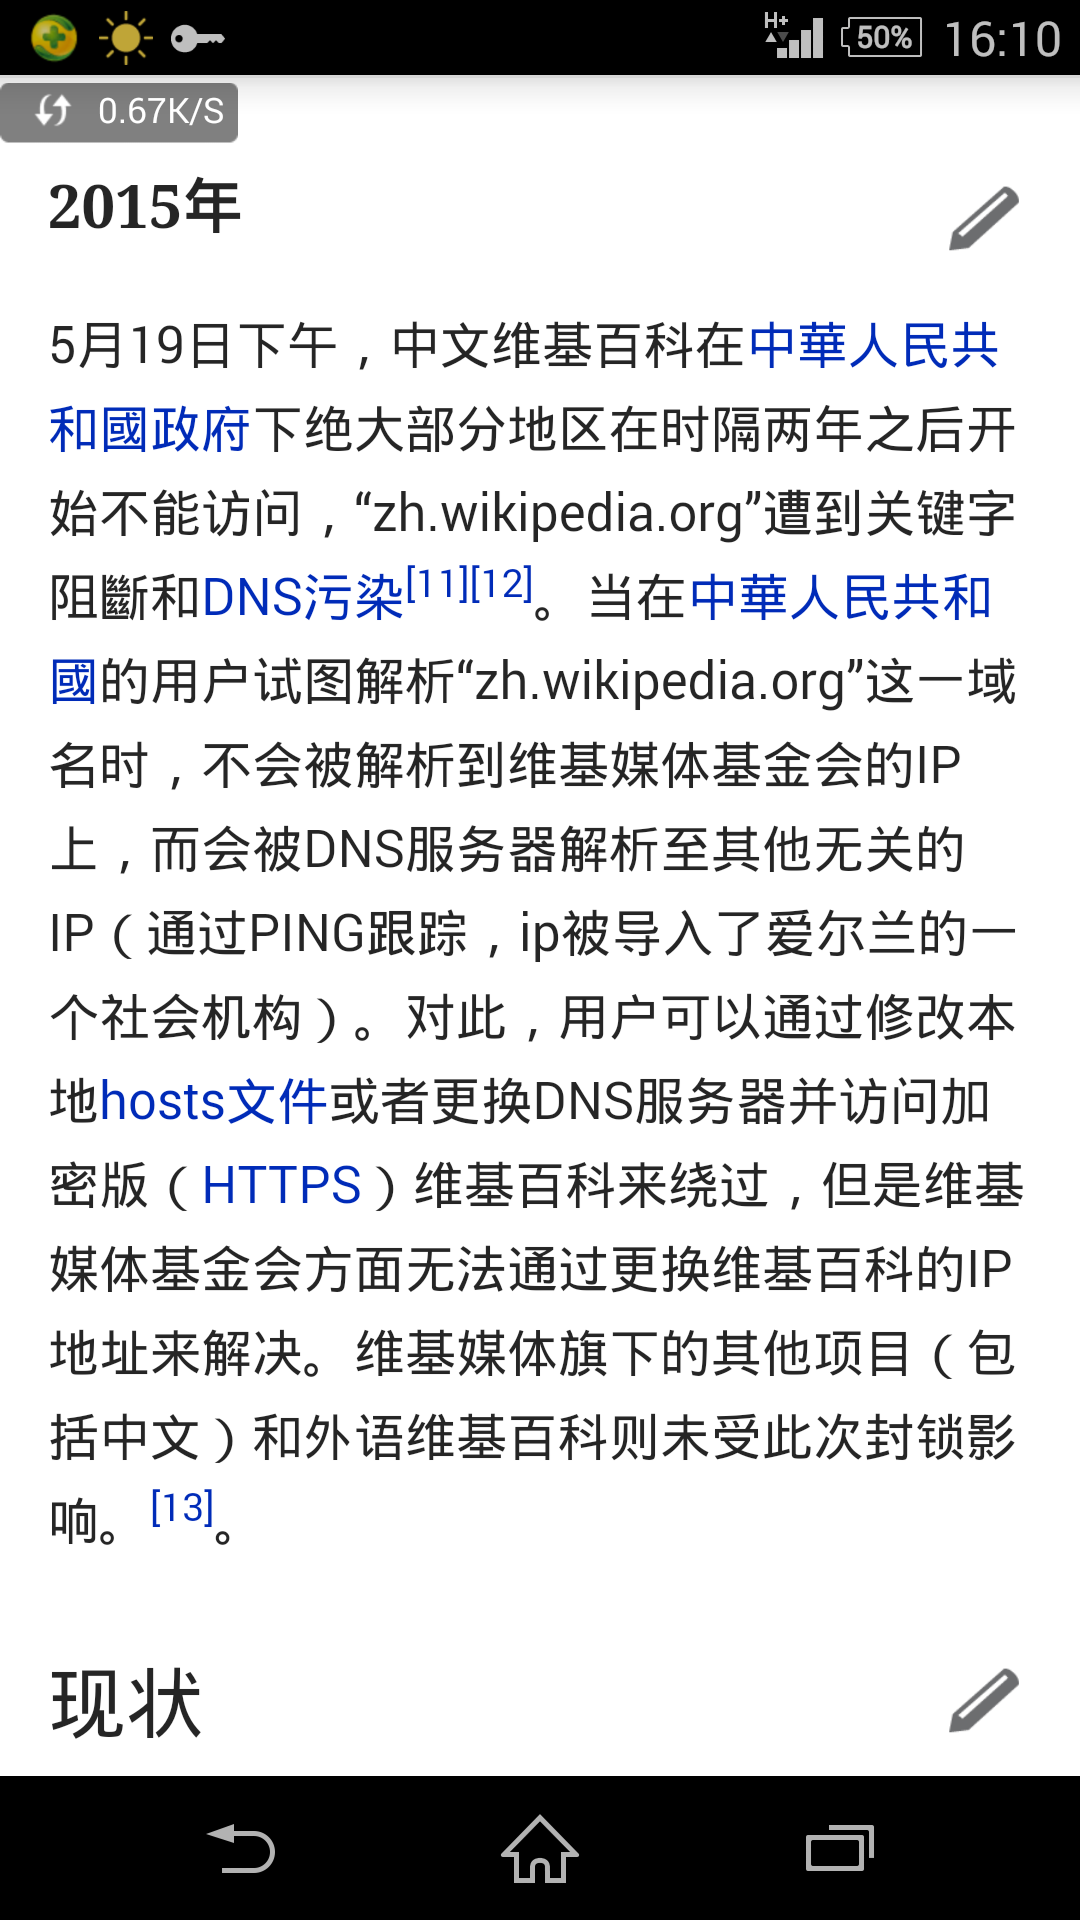 为什么我的维基百科手机客户端搜索不了词条?